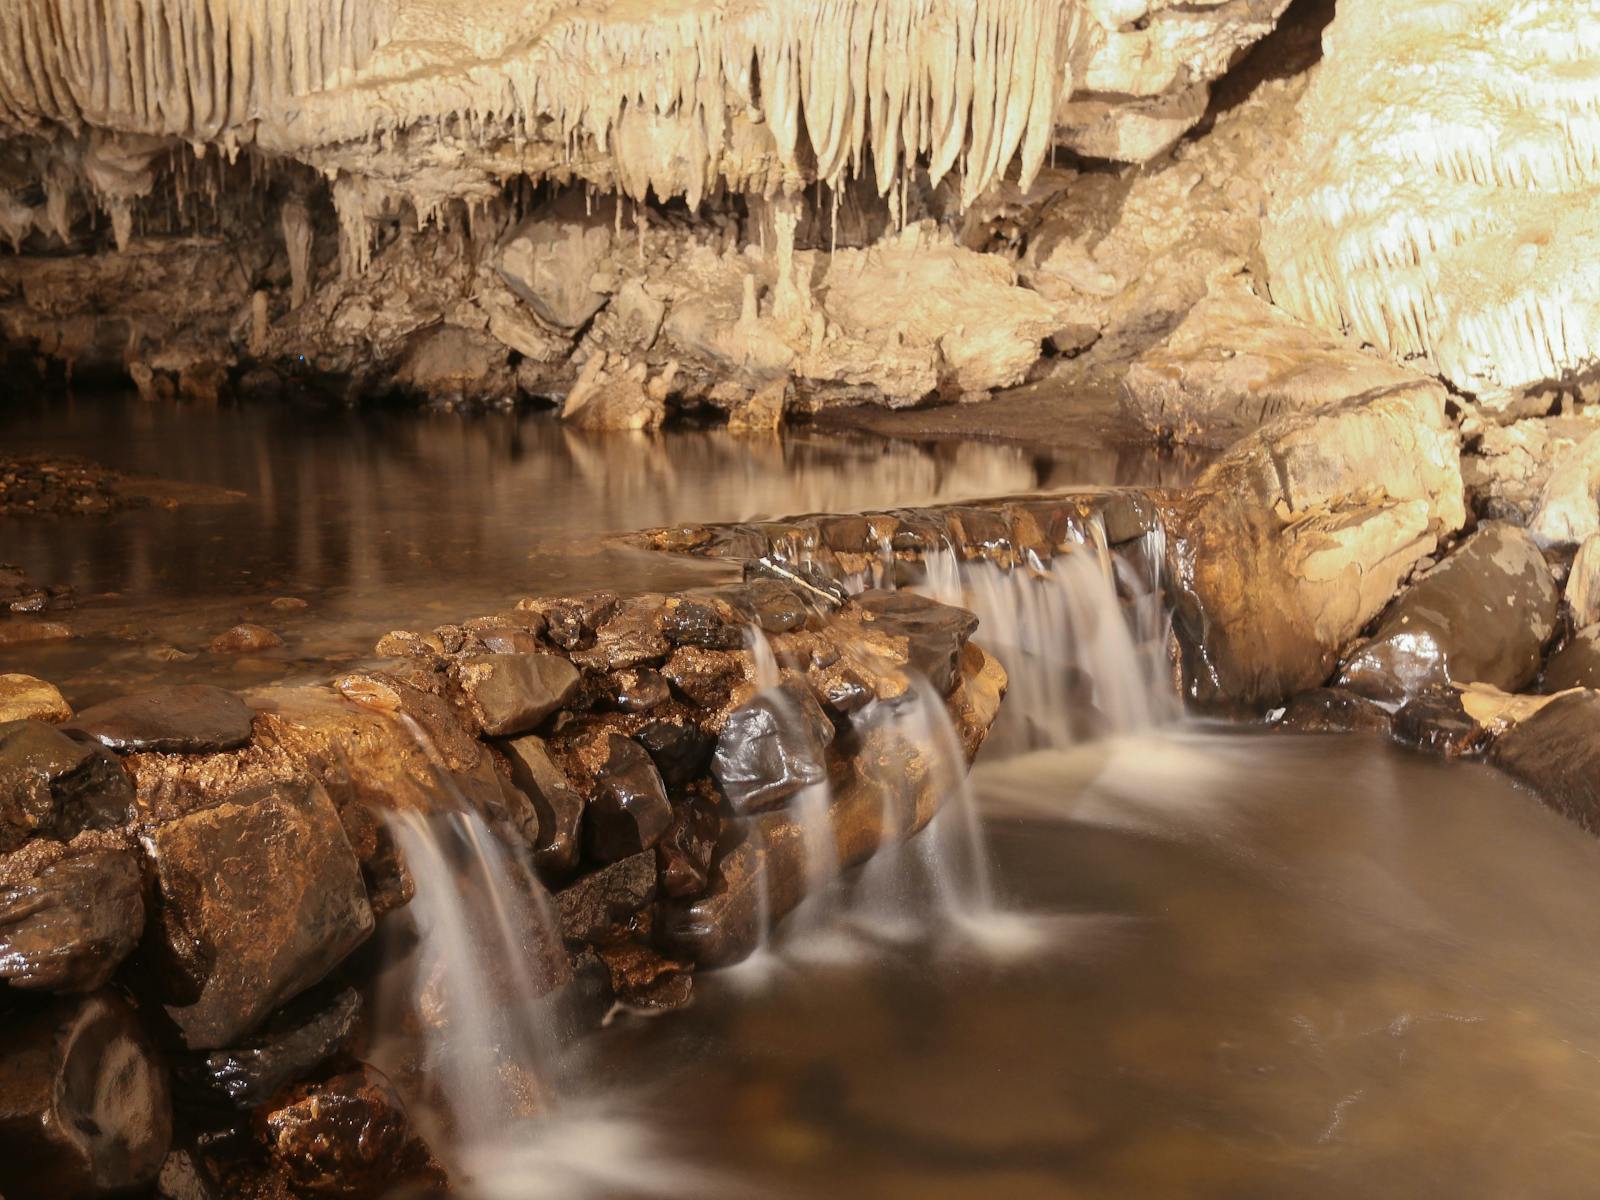 Mole Creek Caves